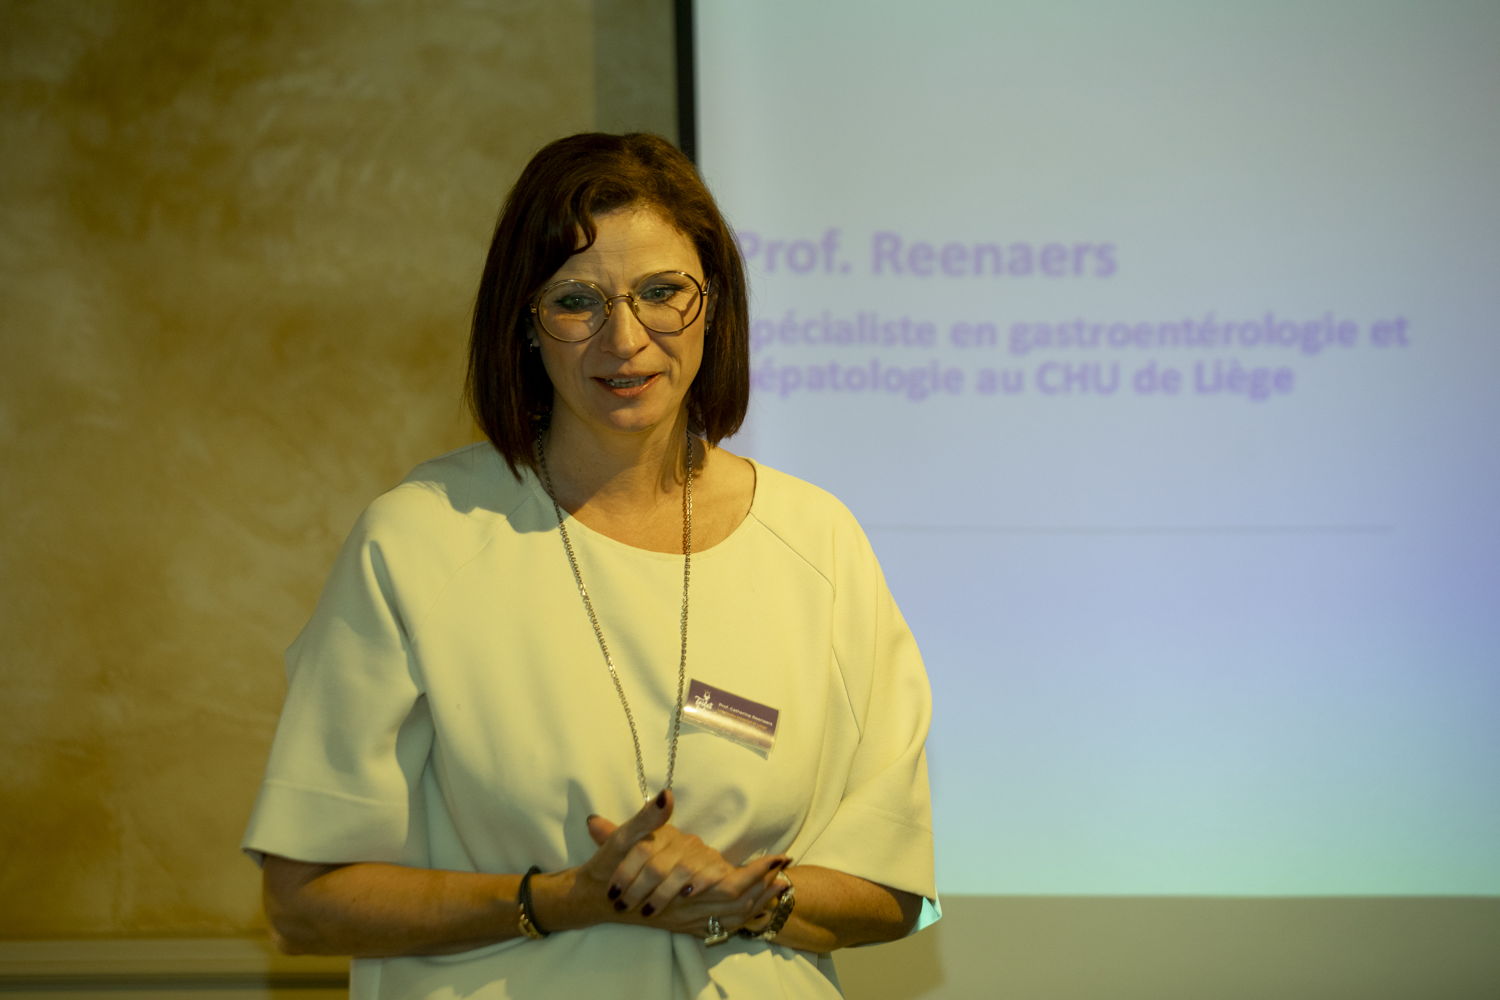 Prof. Reenaers Spécialiste en gastroentérologie et hépatologie au CHU de Liège